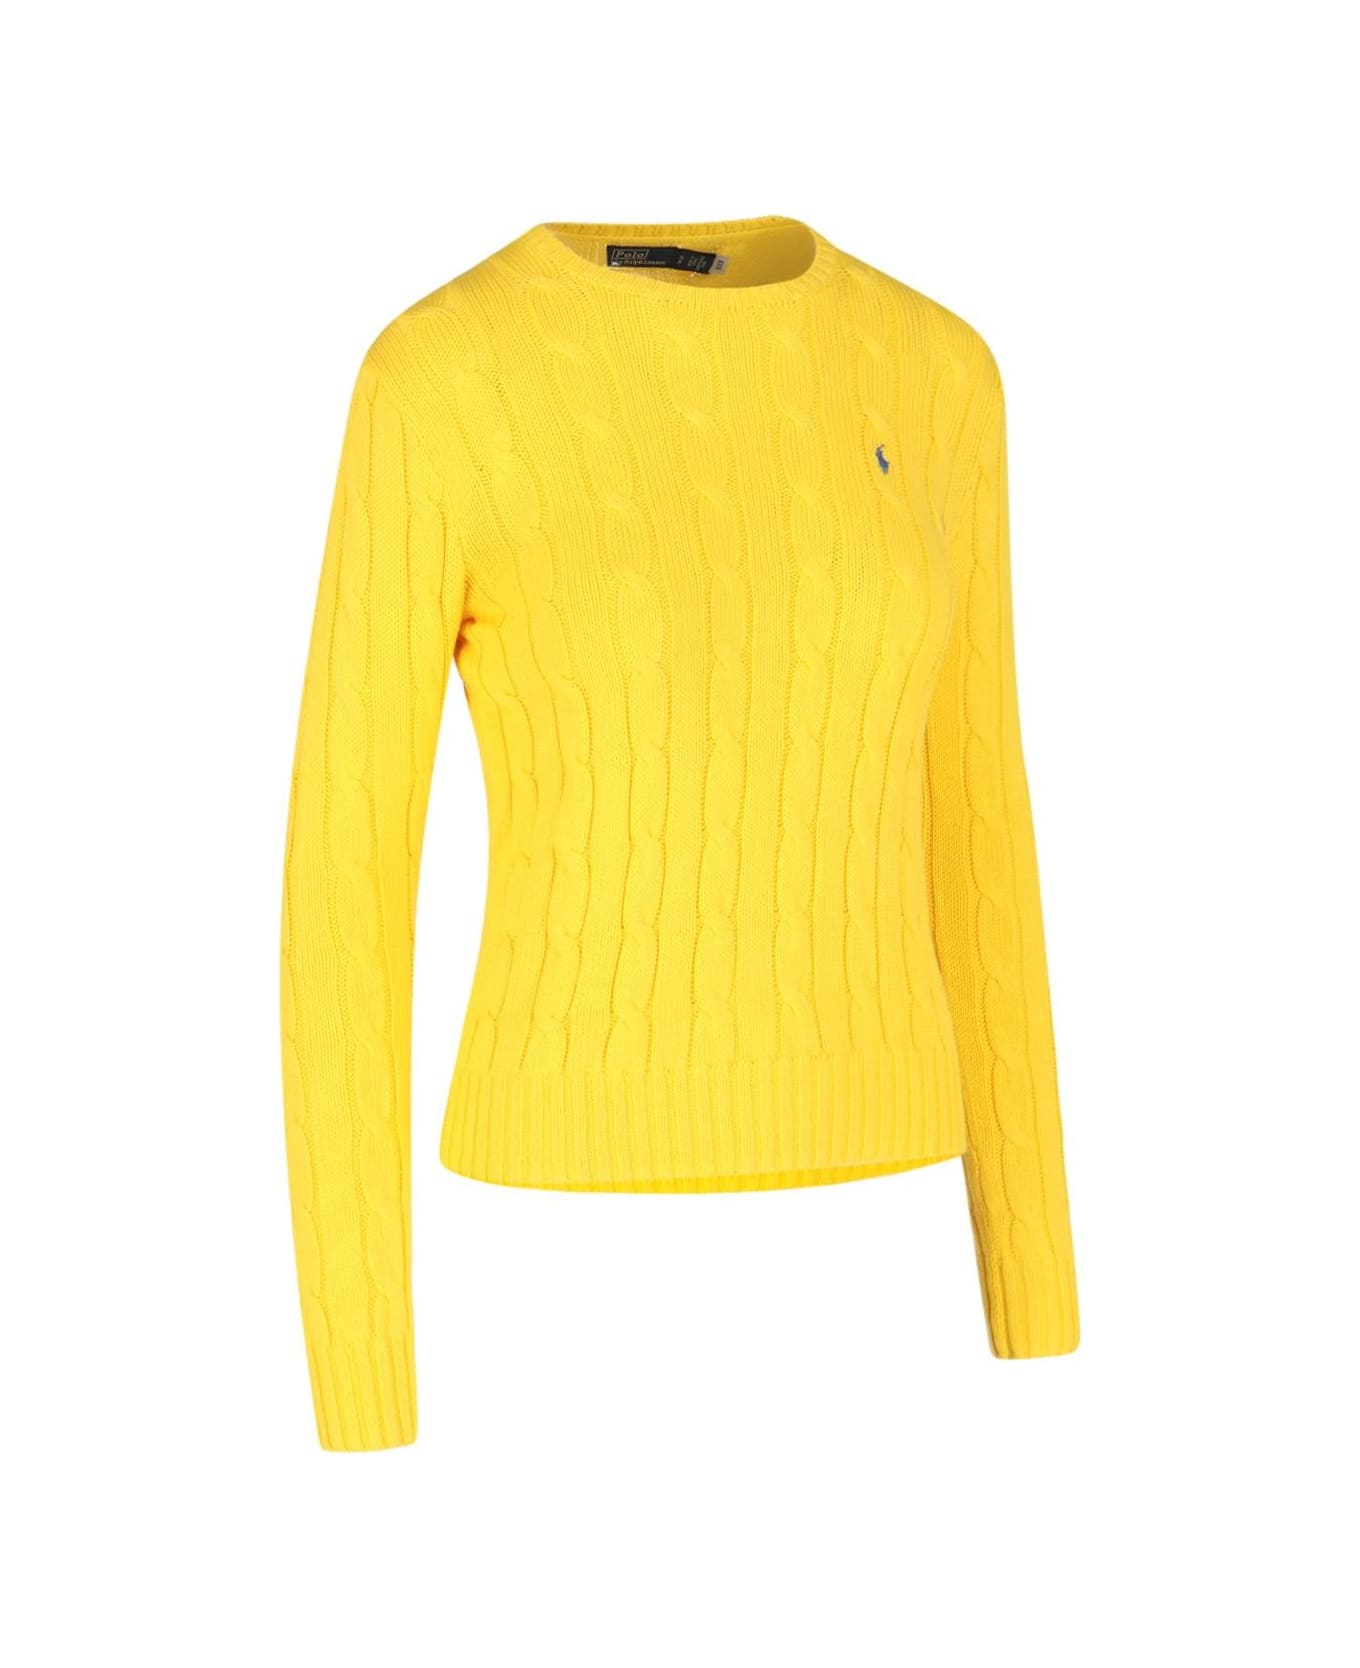 Ralph Lauren Logo Crew Neck Sweater - Trainer Yellow